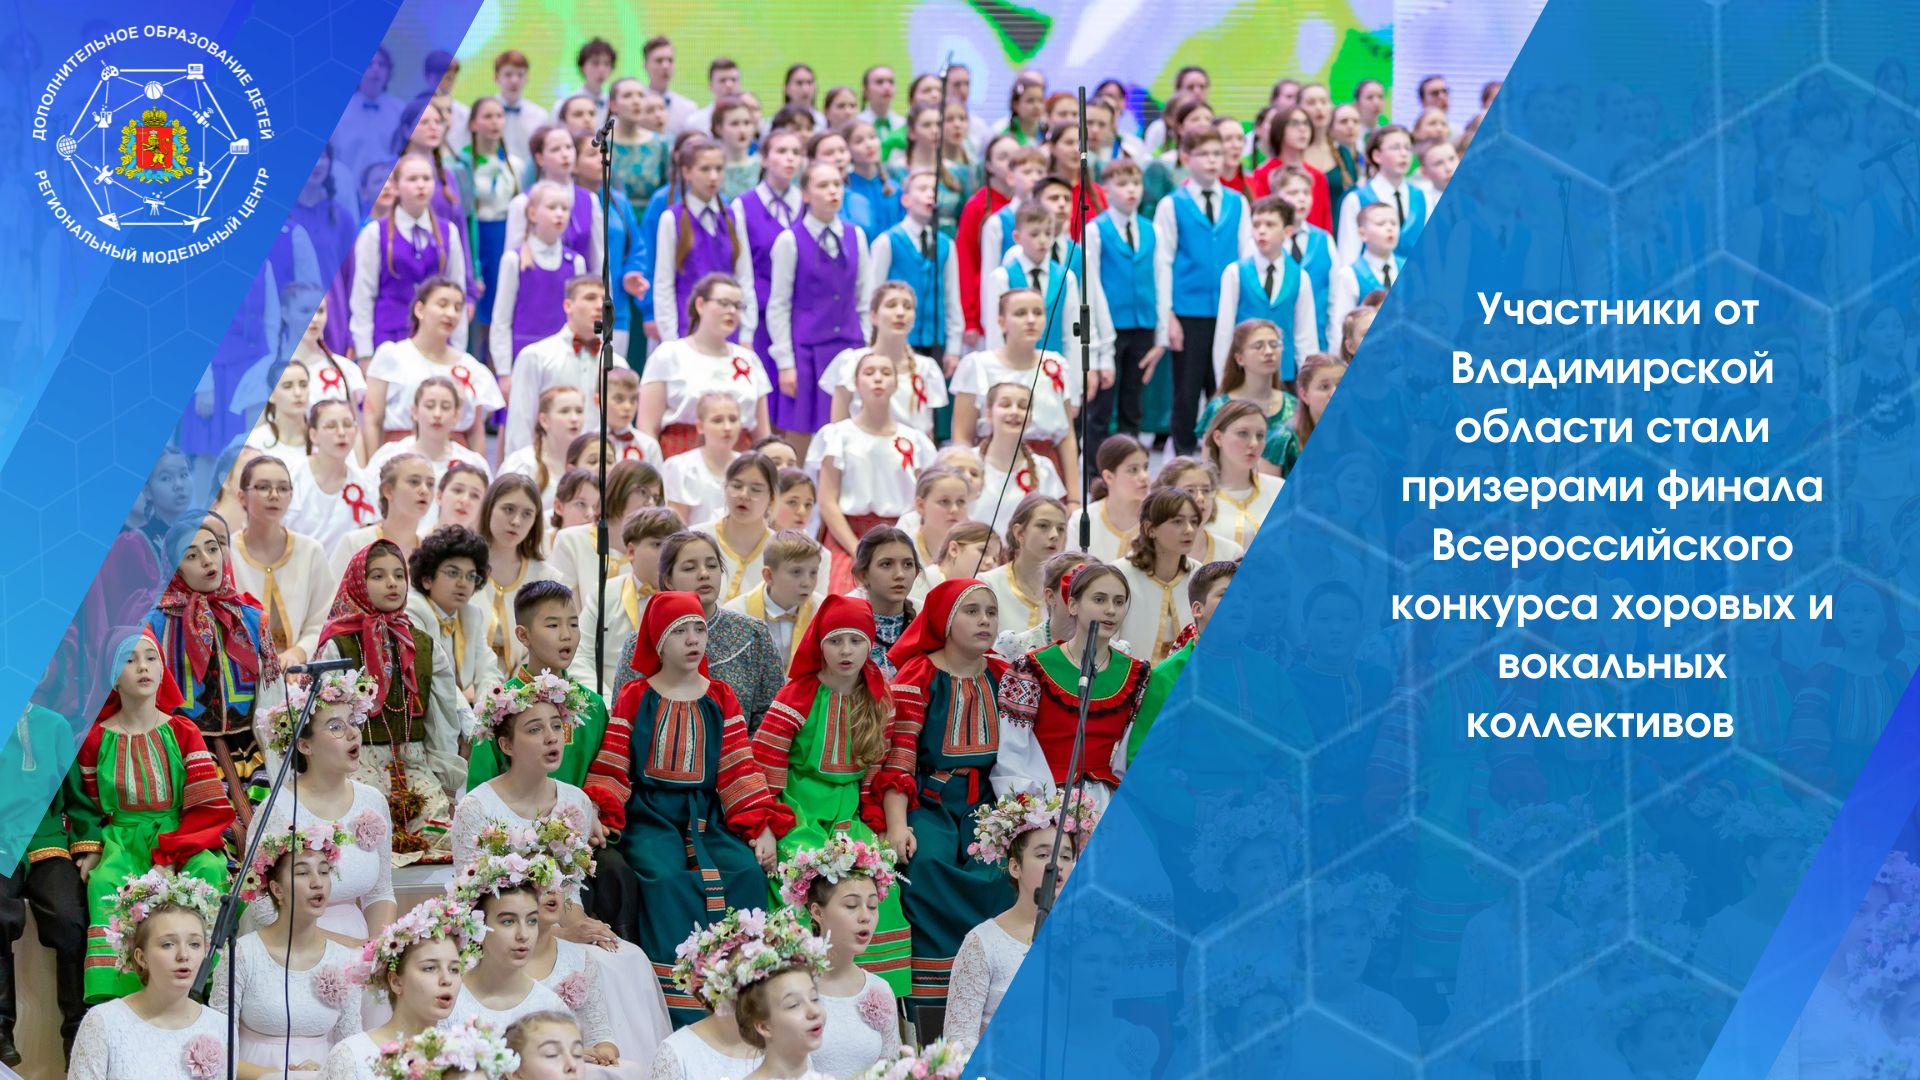 Участники от Владимирской области стали призерами финала Всероссийского конкурса хоровых и вокальных коллективов